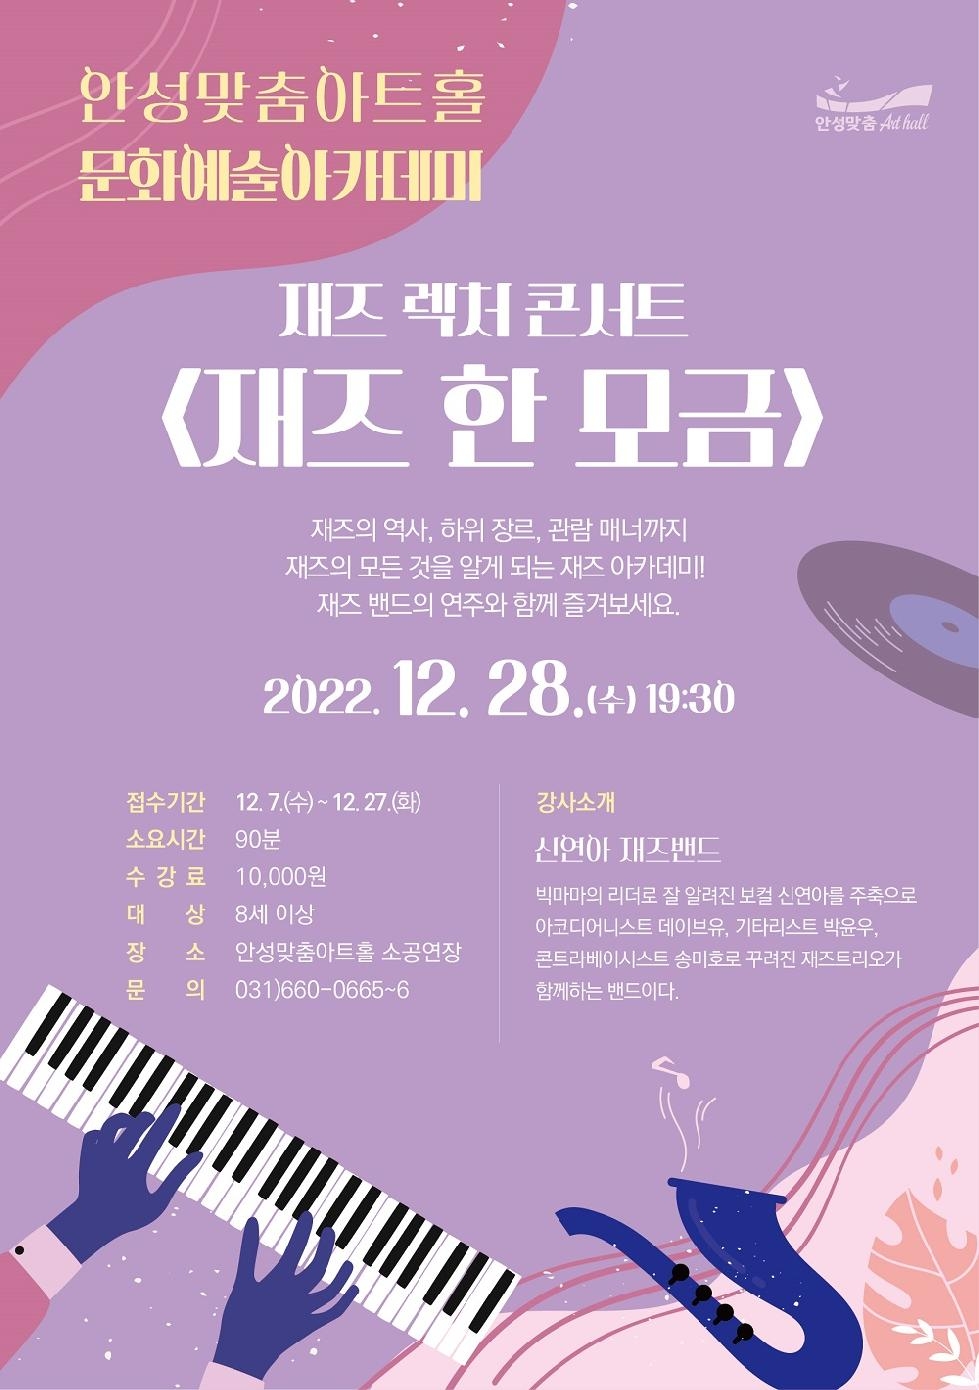 안성맞춤아트홀, 재즈 렉처 콘서트 [재즈 한 모금]개최